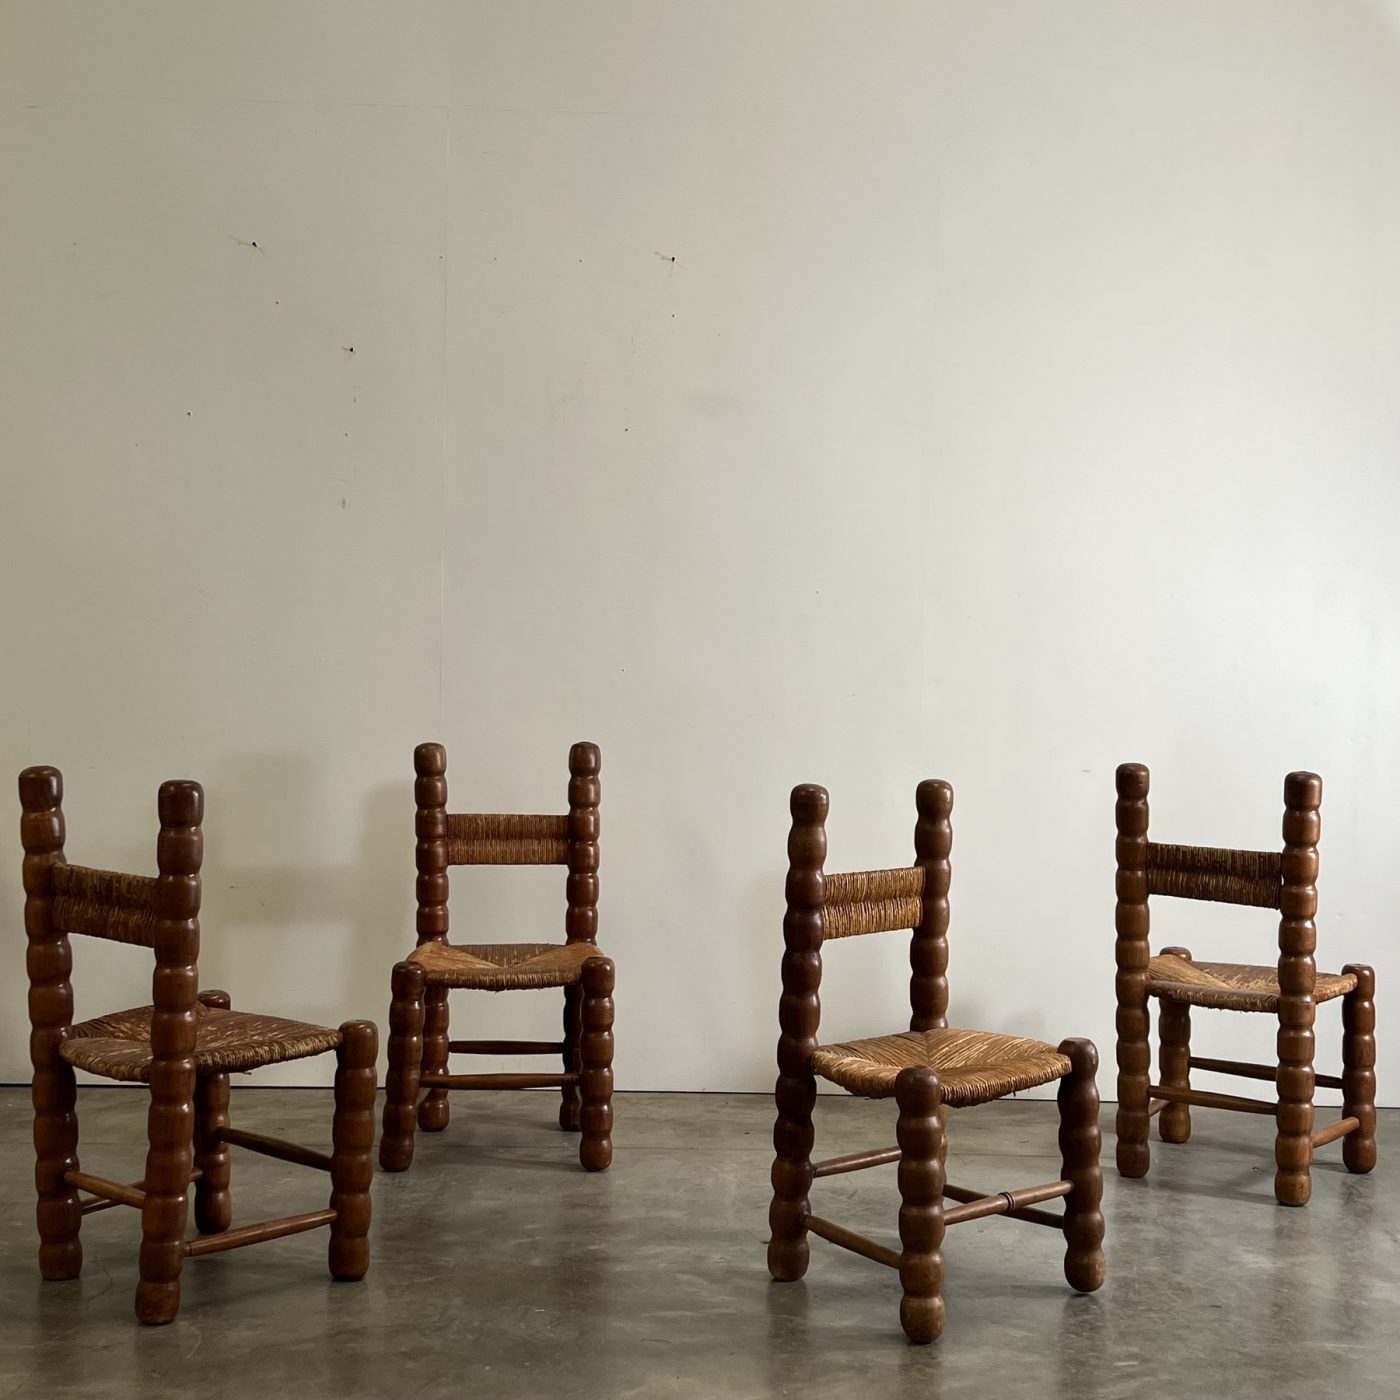 objet-vagabond-massive-chairs0012